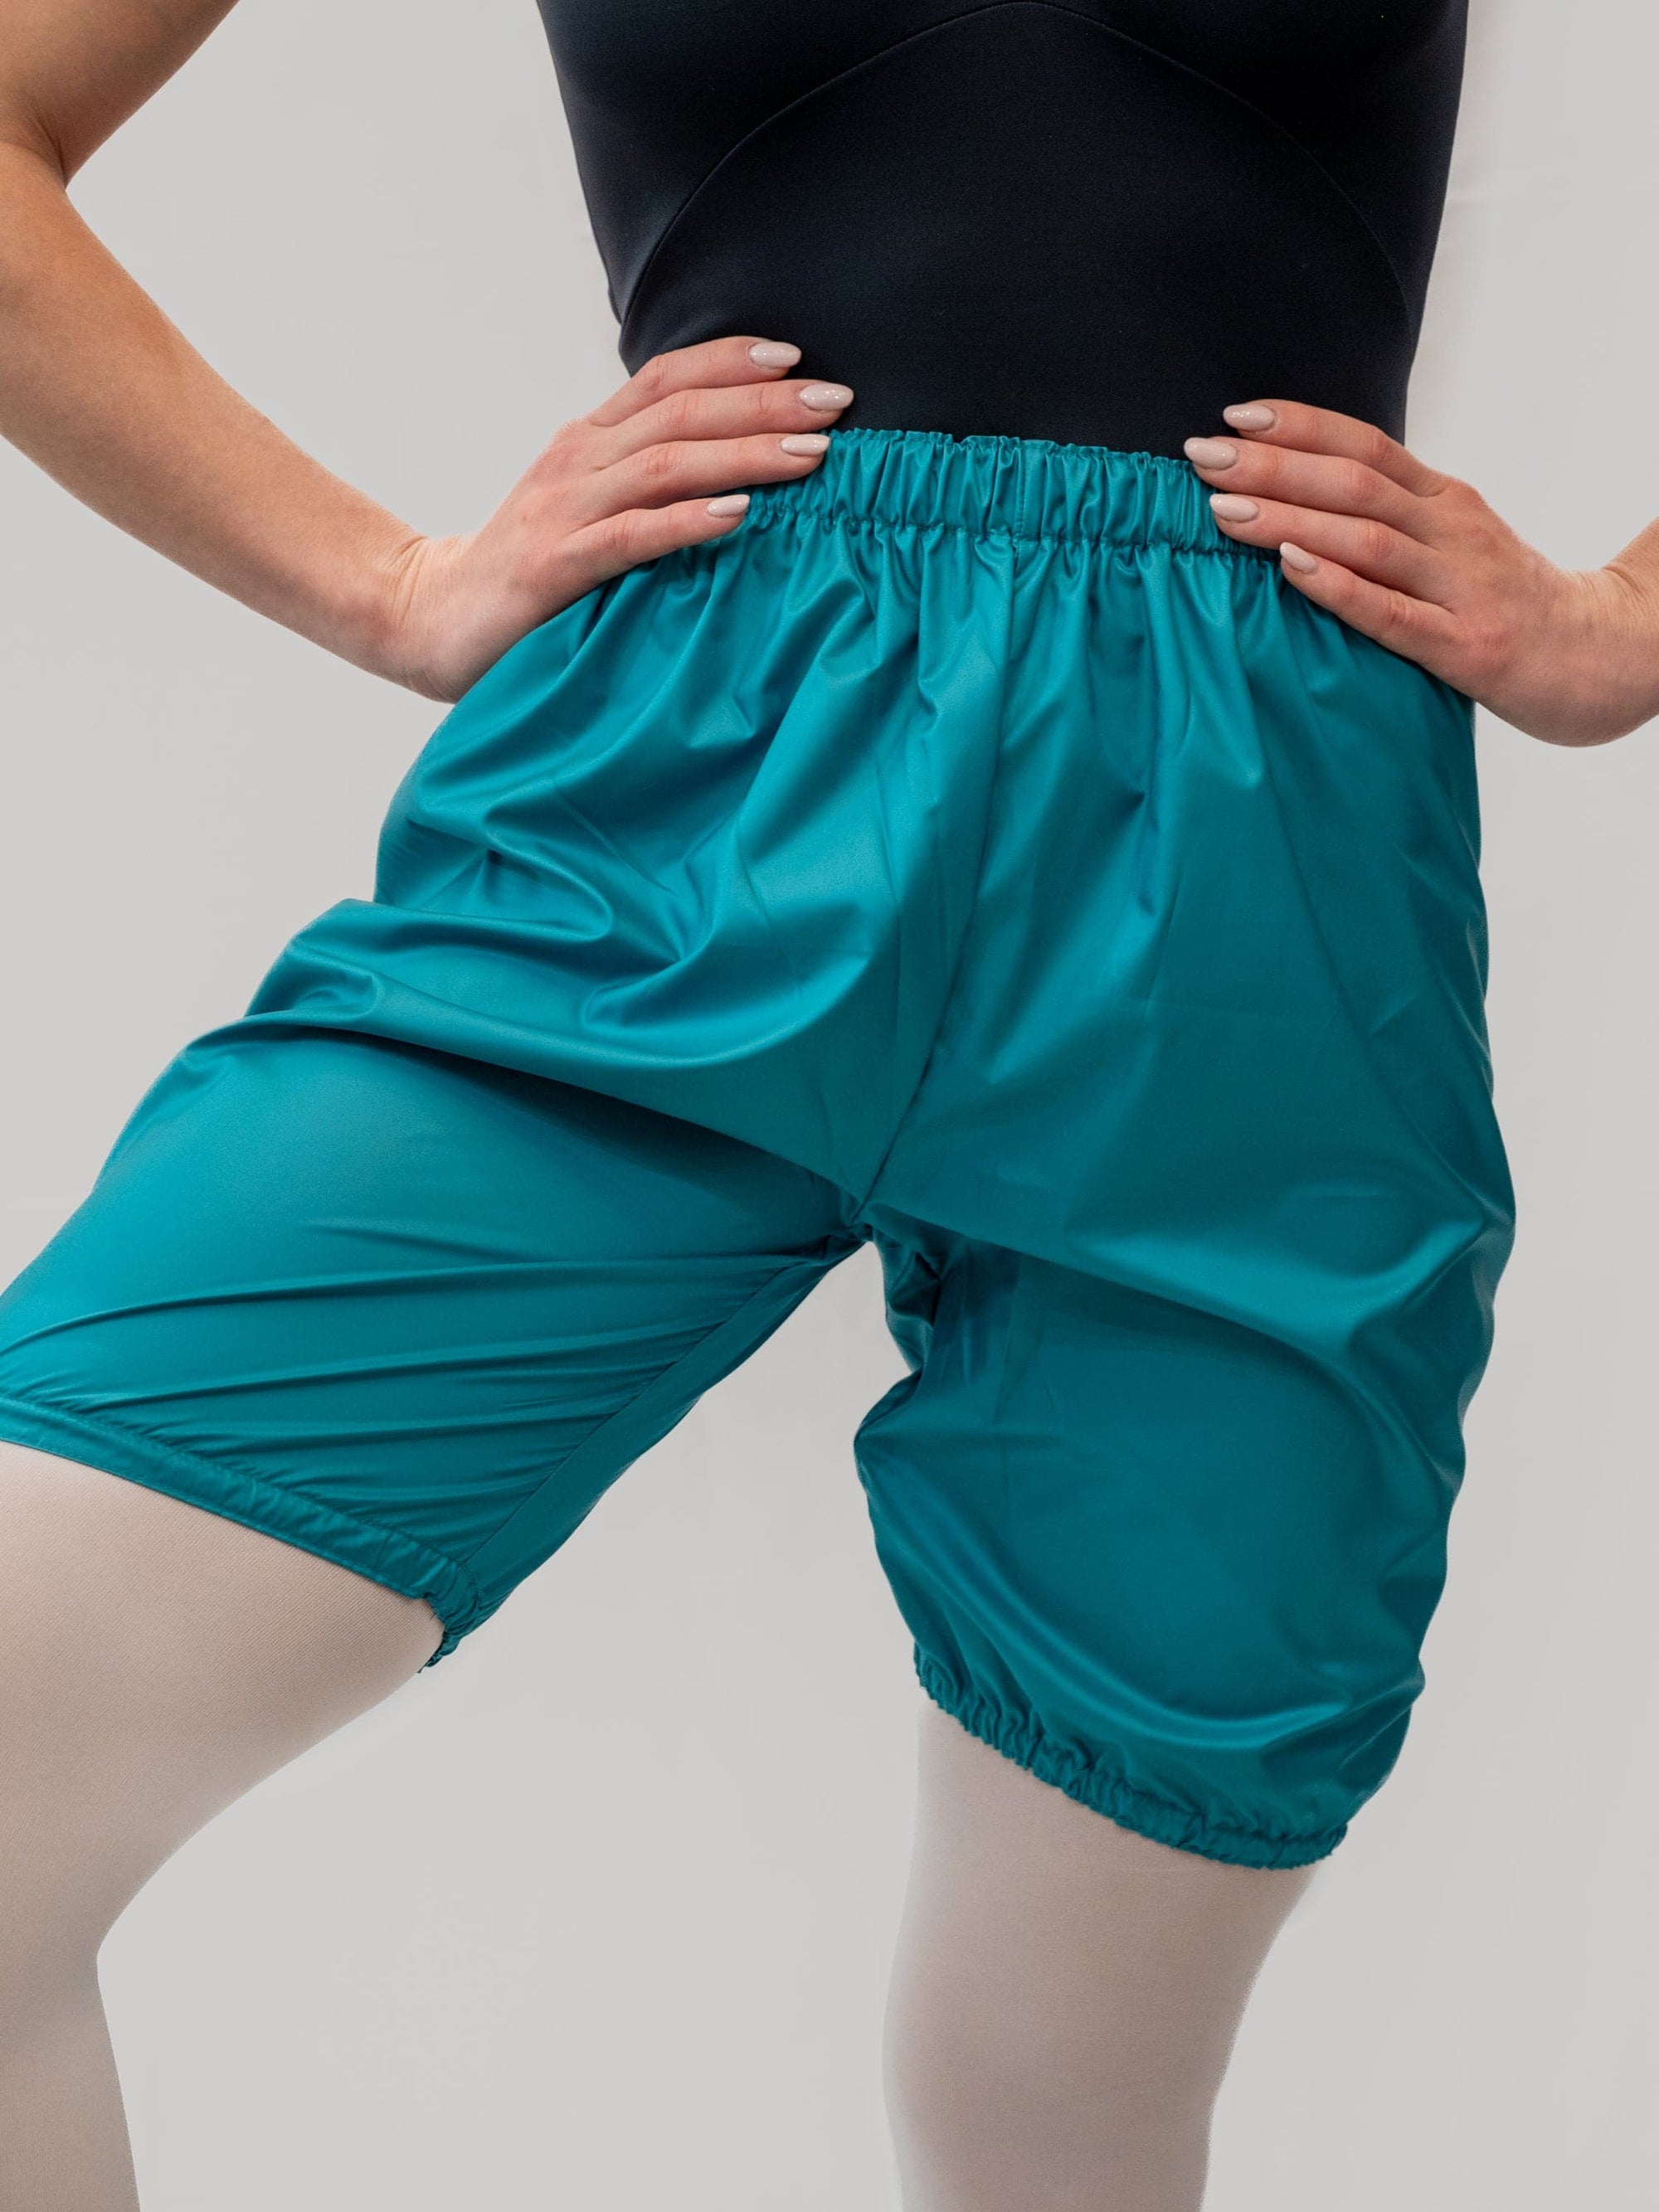 Dance Shorts for Men and Boys - Atelier della Danza MP